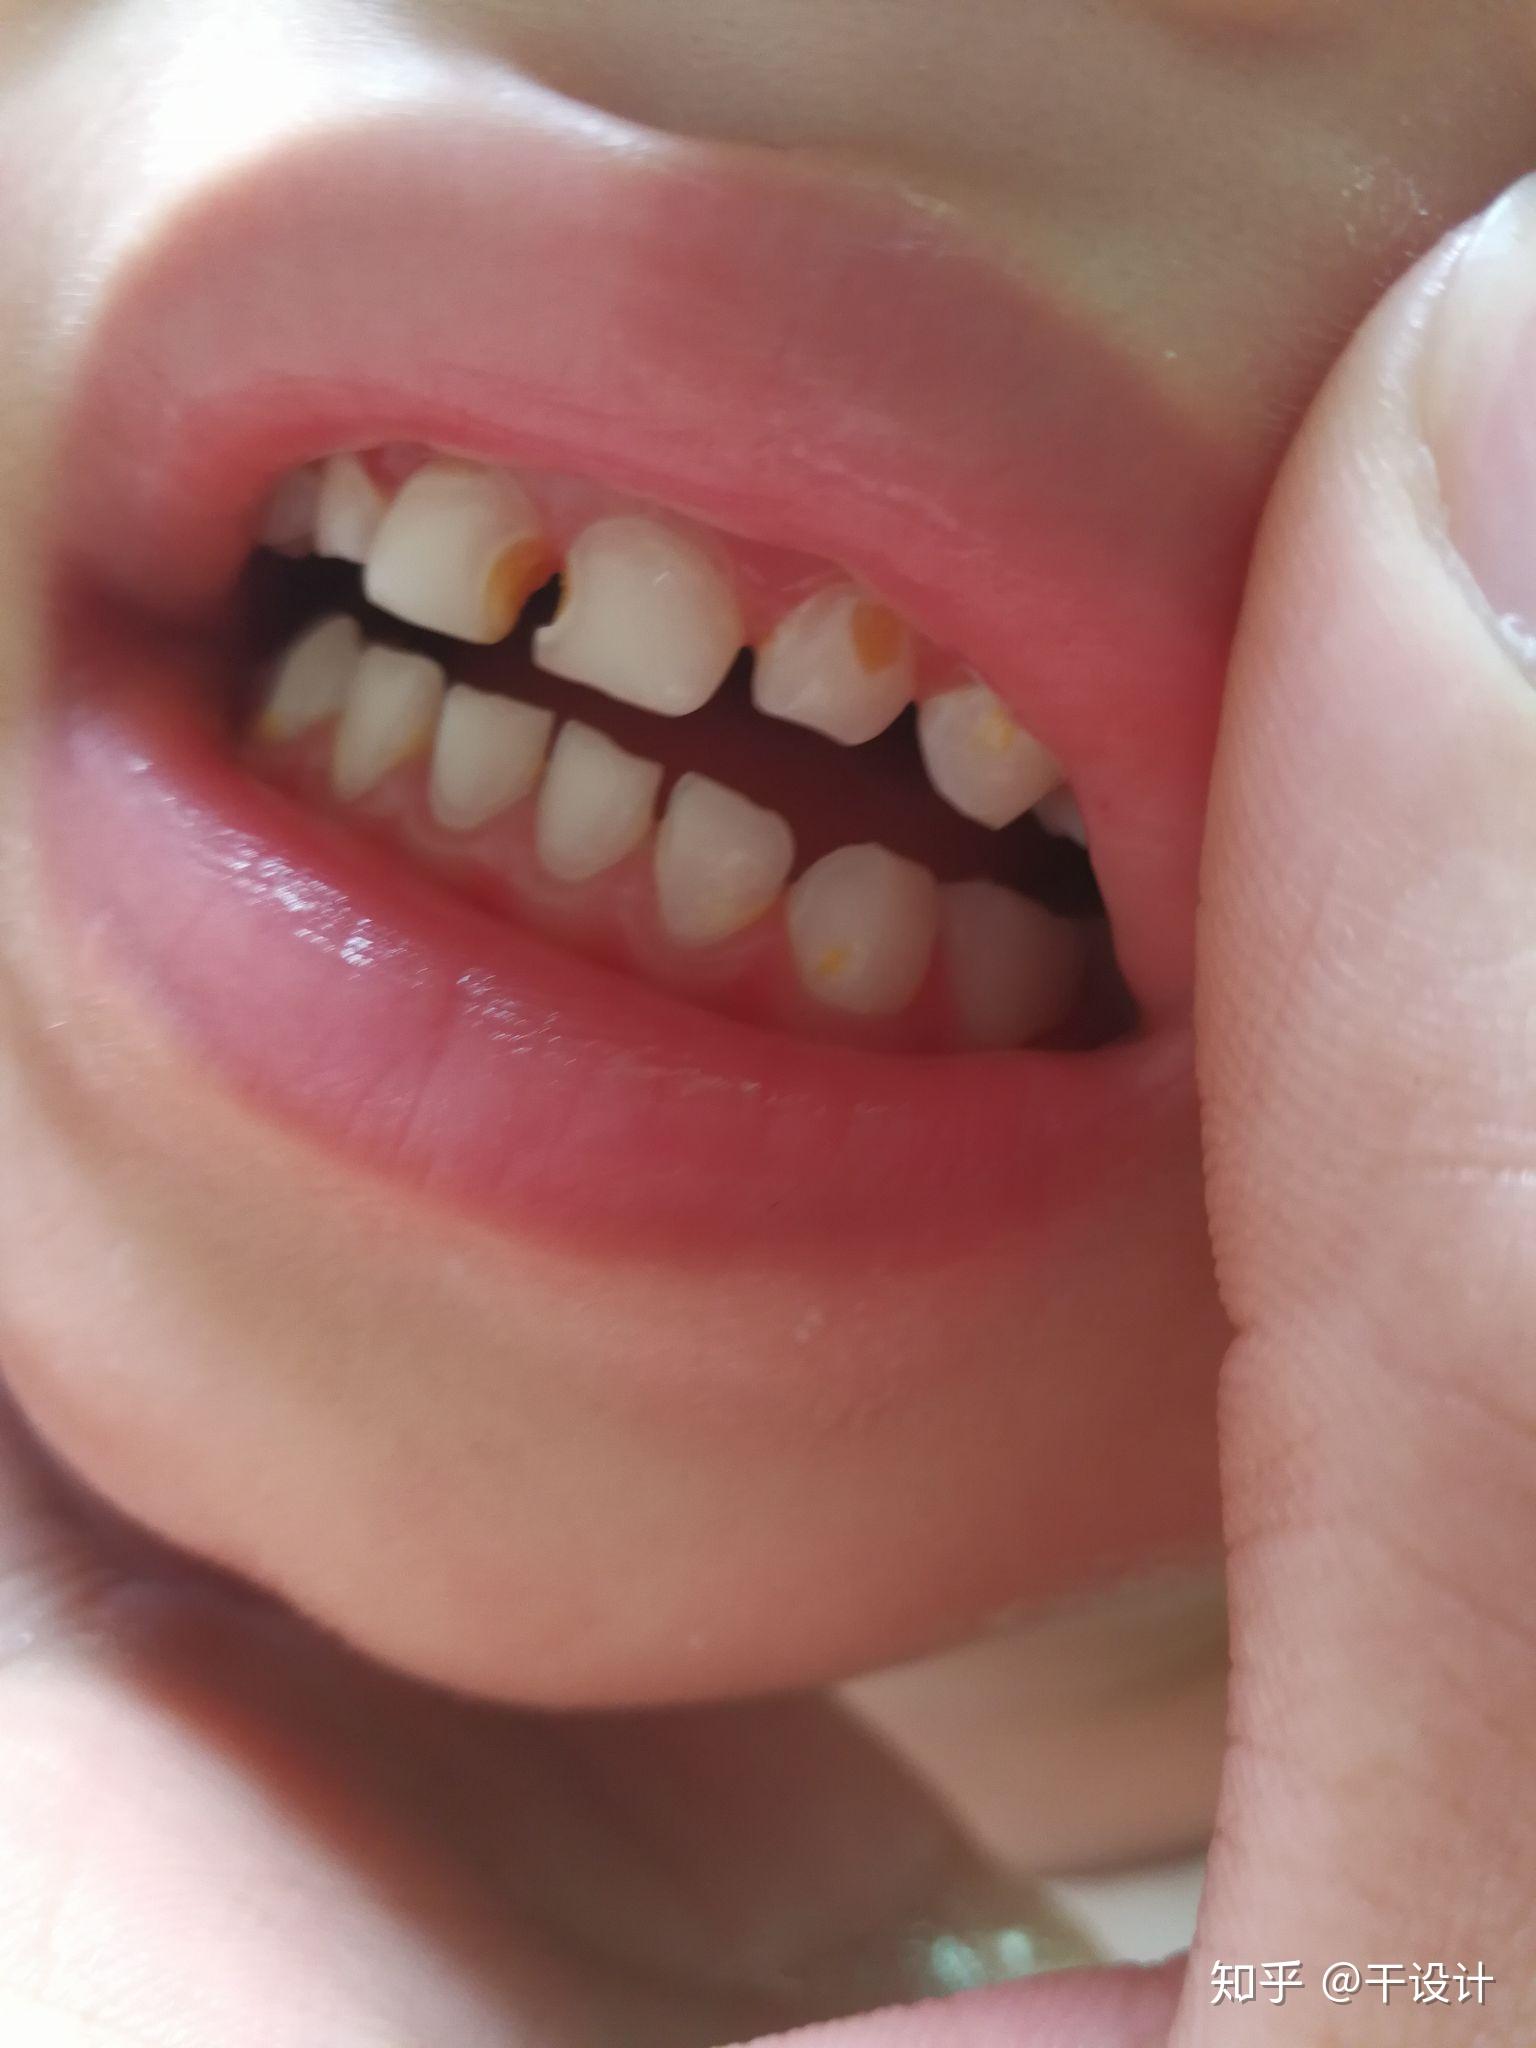 小孩要换多少颗牙齿图解换牙顺序（@宝爸宝妈们，儿童换牙期健康手册） | 说明书网